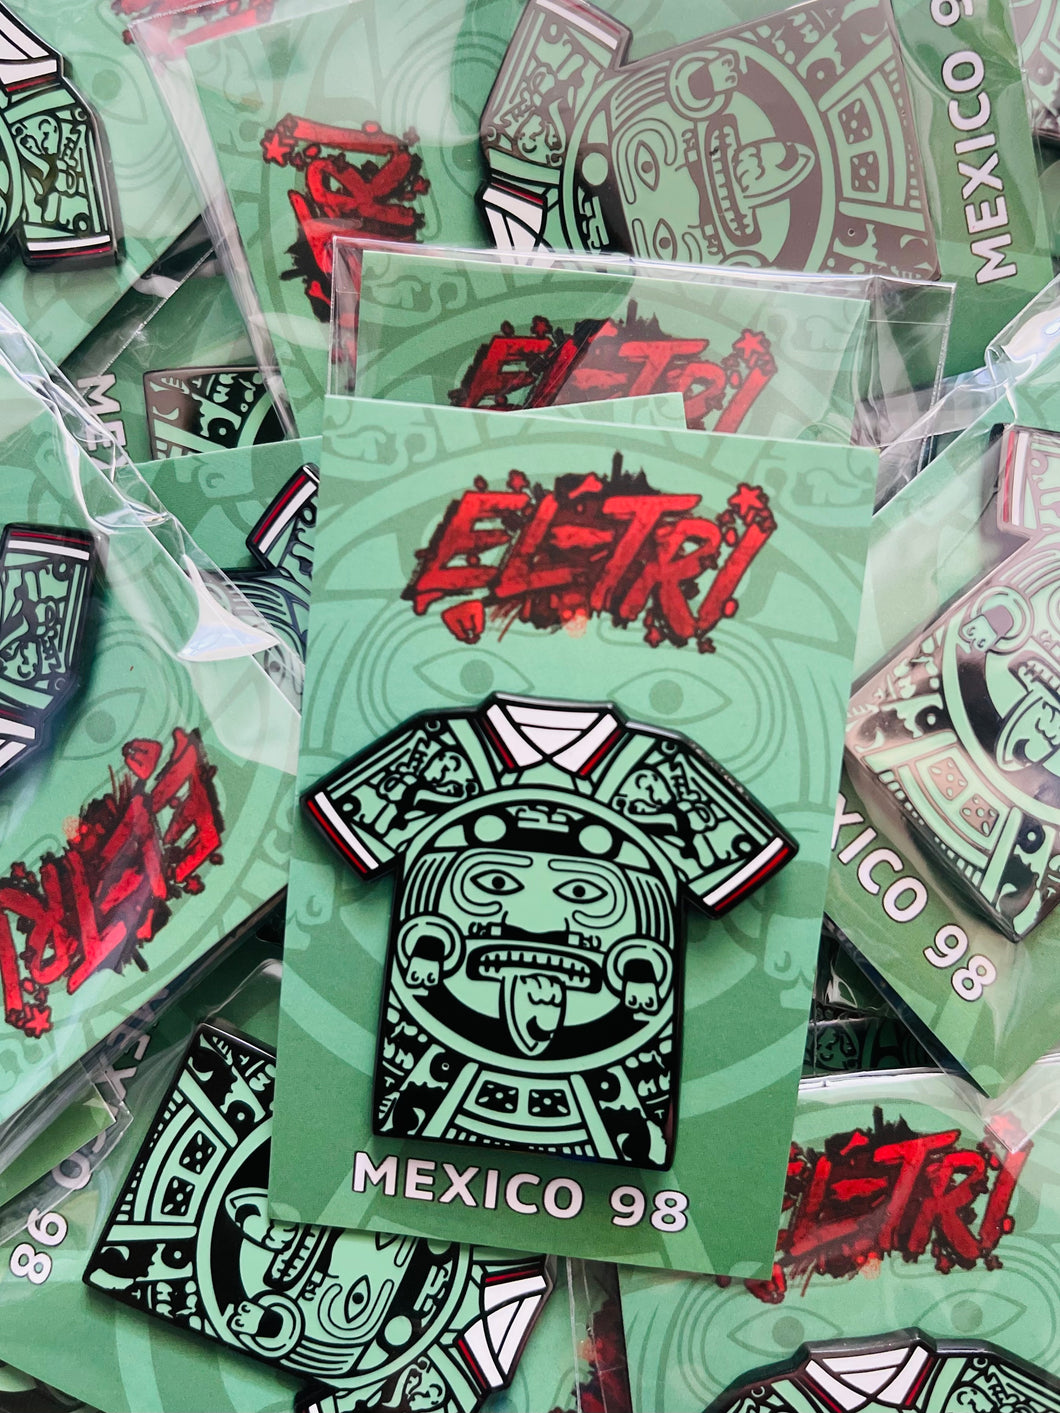 Mexico 98 Aztec badge